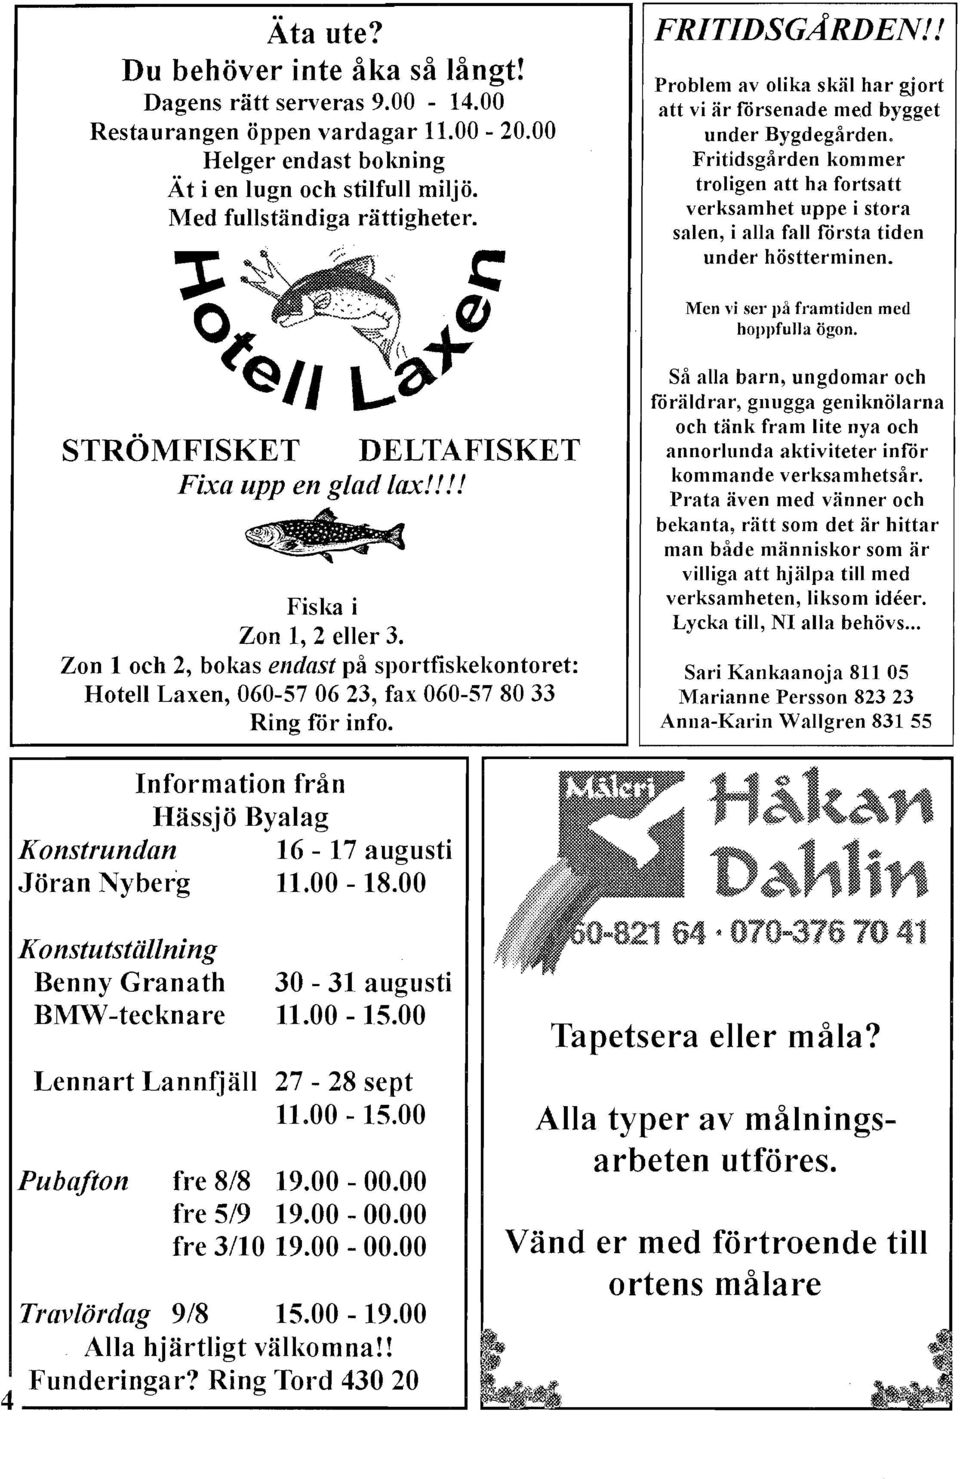 Zon 1 och 2, bokas endast på sportfiskelwntoret: Hotell Laxen, 060-57 06 23, fax 060-57 80 33 Ring för info. FRTDSGARDEN!